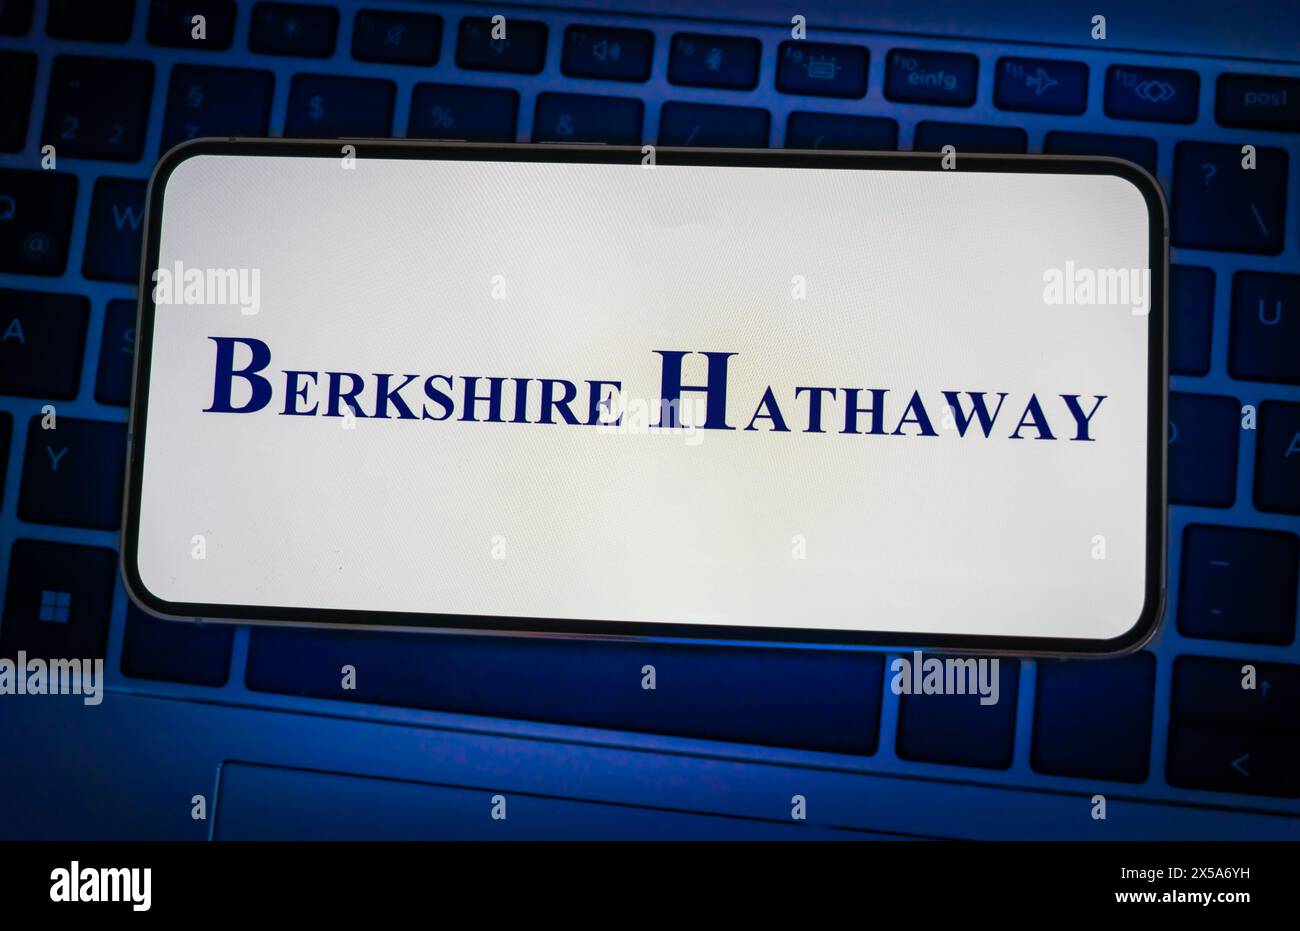 Logo de la société Berkshire Hathaway affiché sur un appareil mobile Banque D'Images